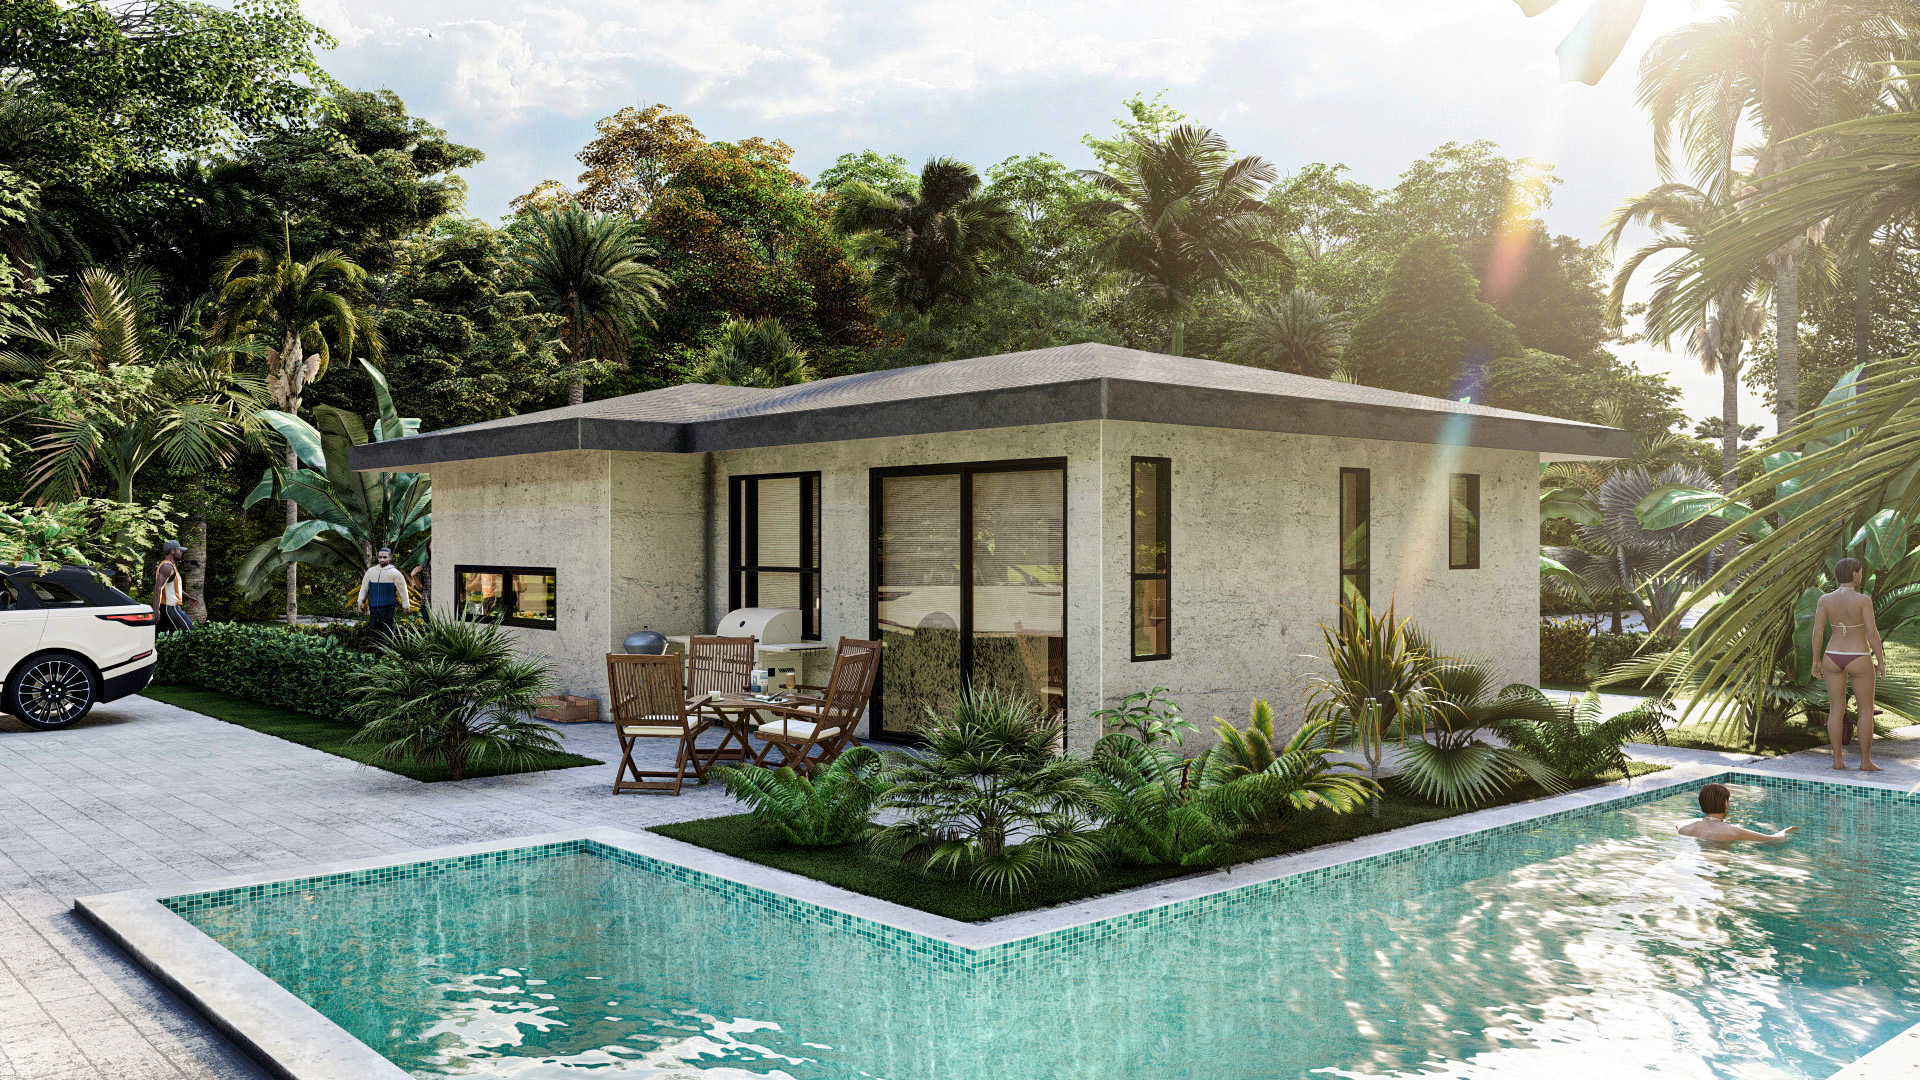 Tangara Home. Bosque del Pacifico - The beach Homes for sale Costa Rica